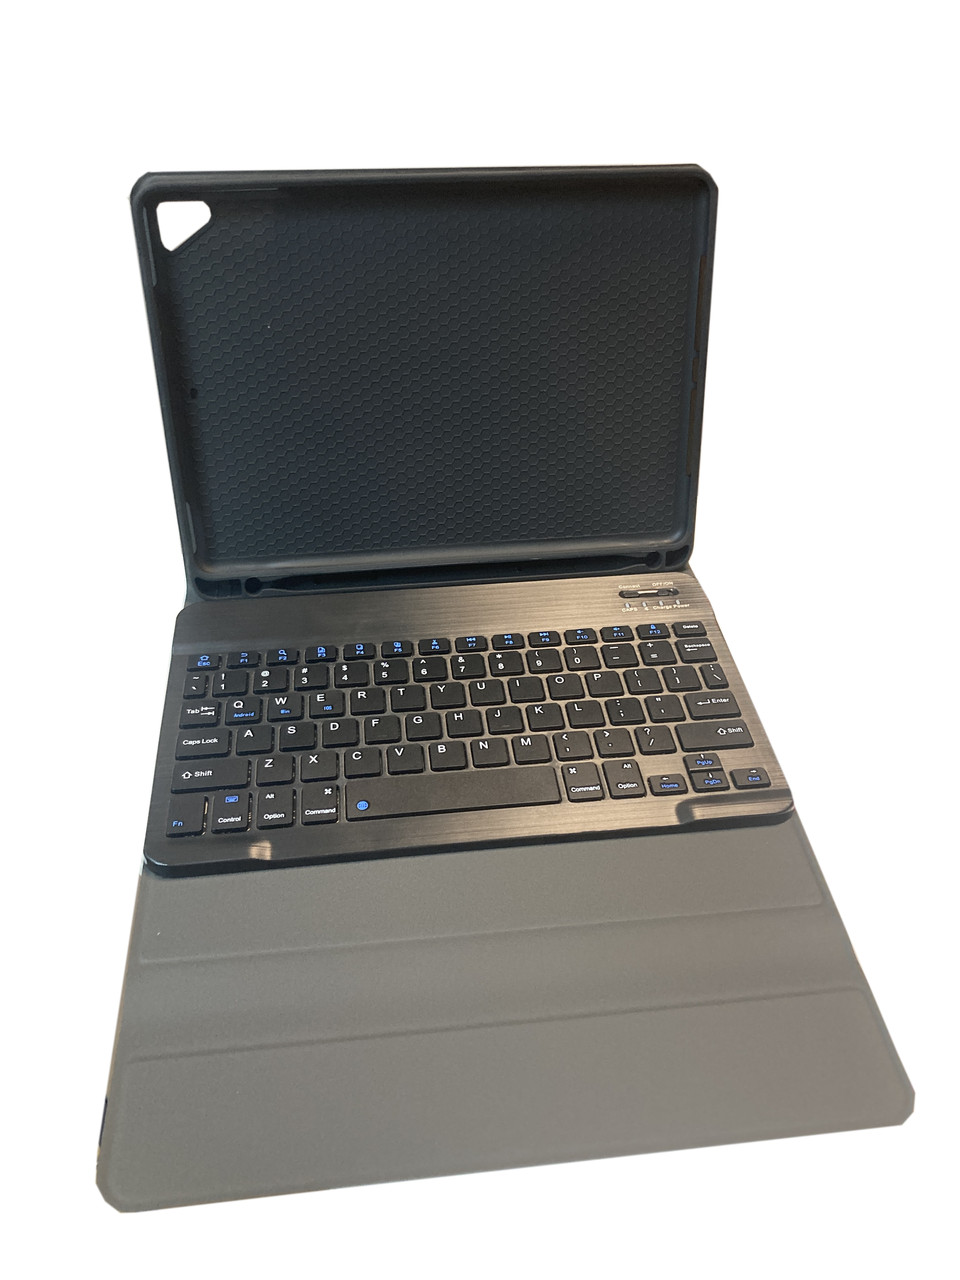 Беспроводная клавиатура-чехол для iPad Air/Pro 9.7 (2018 г.), Bluetooth, черный цвет